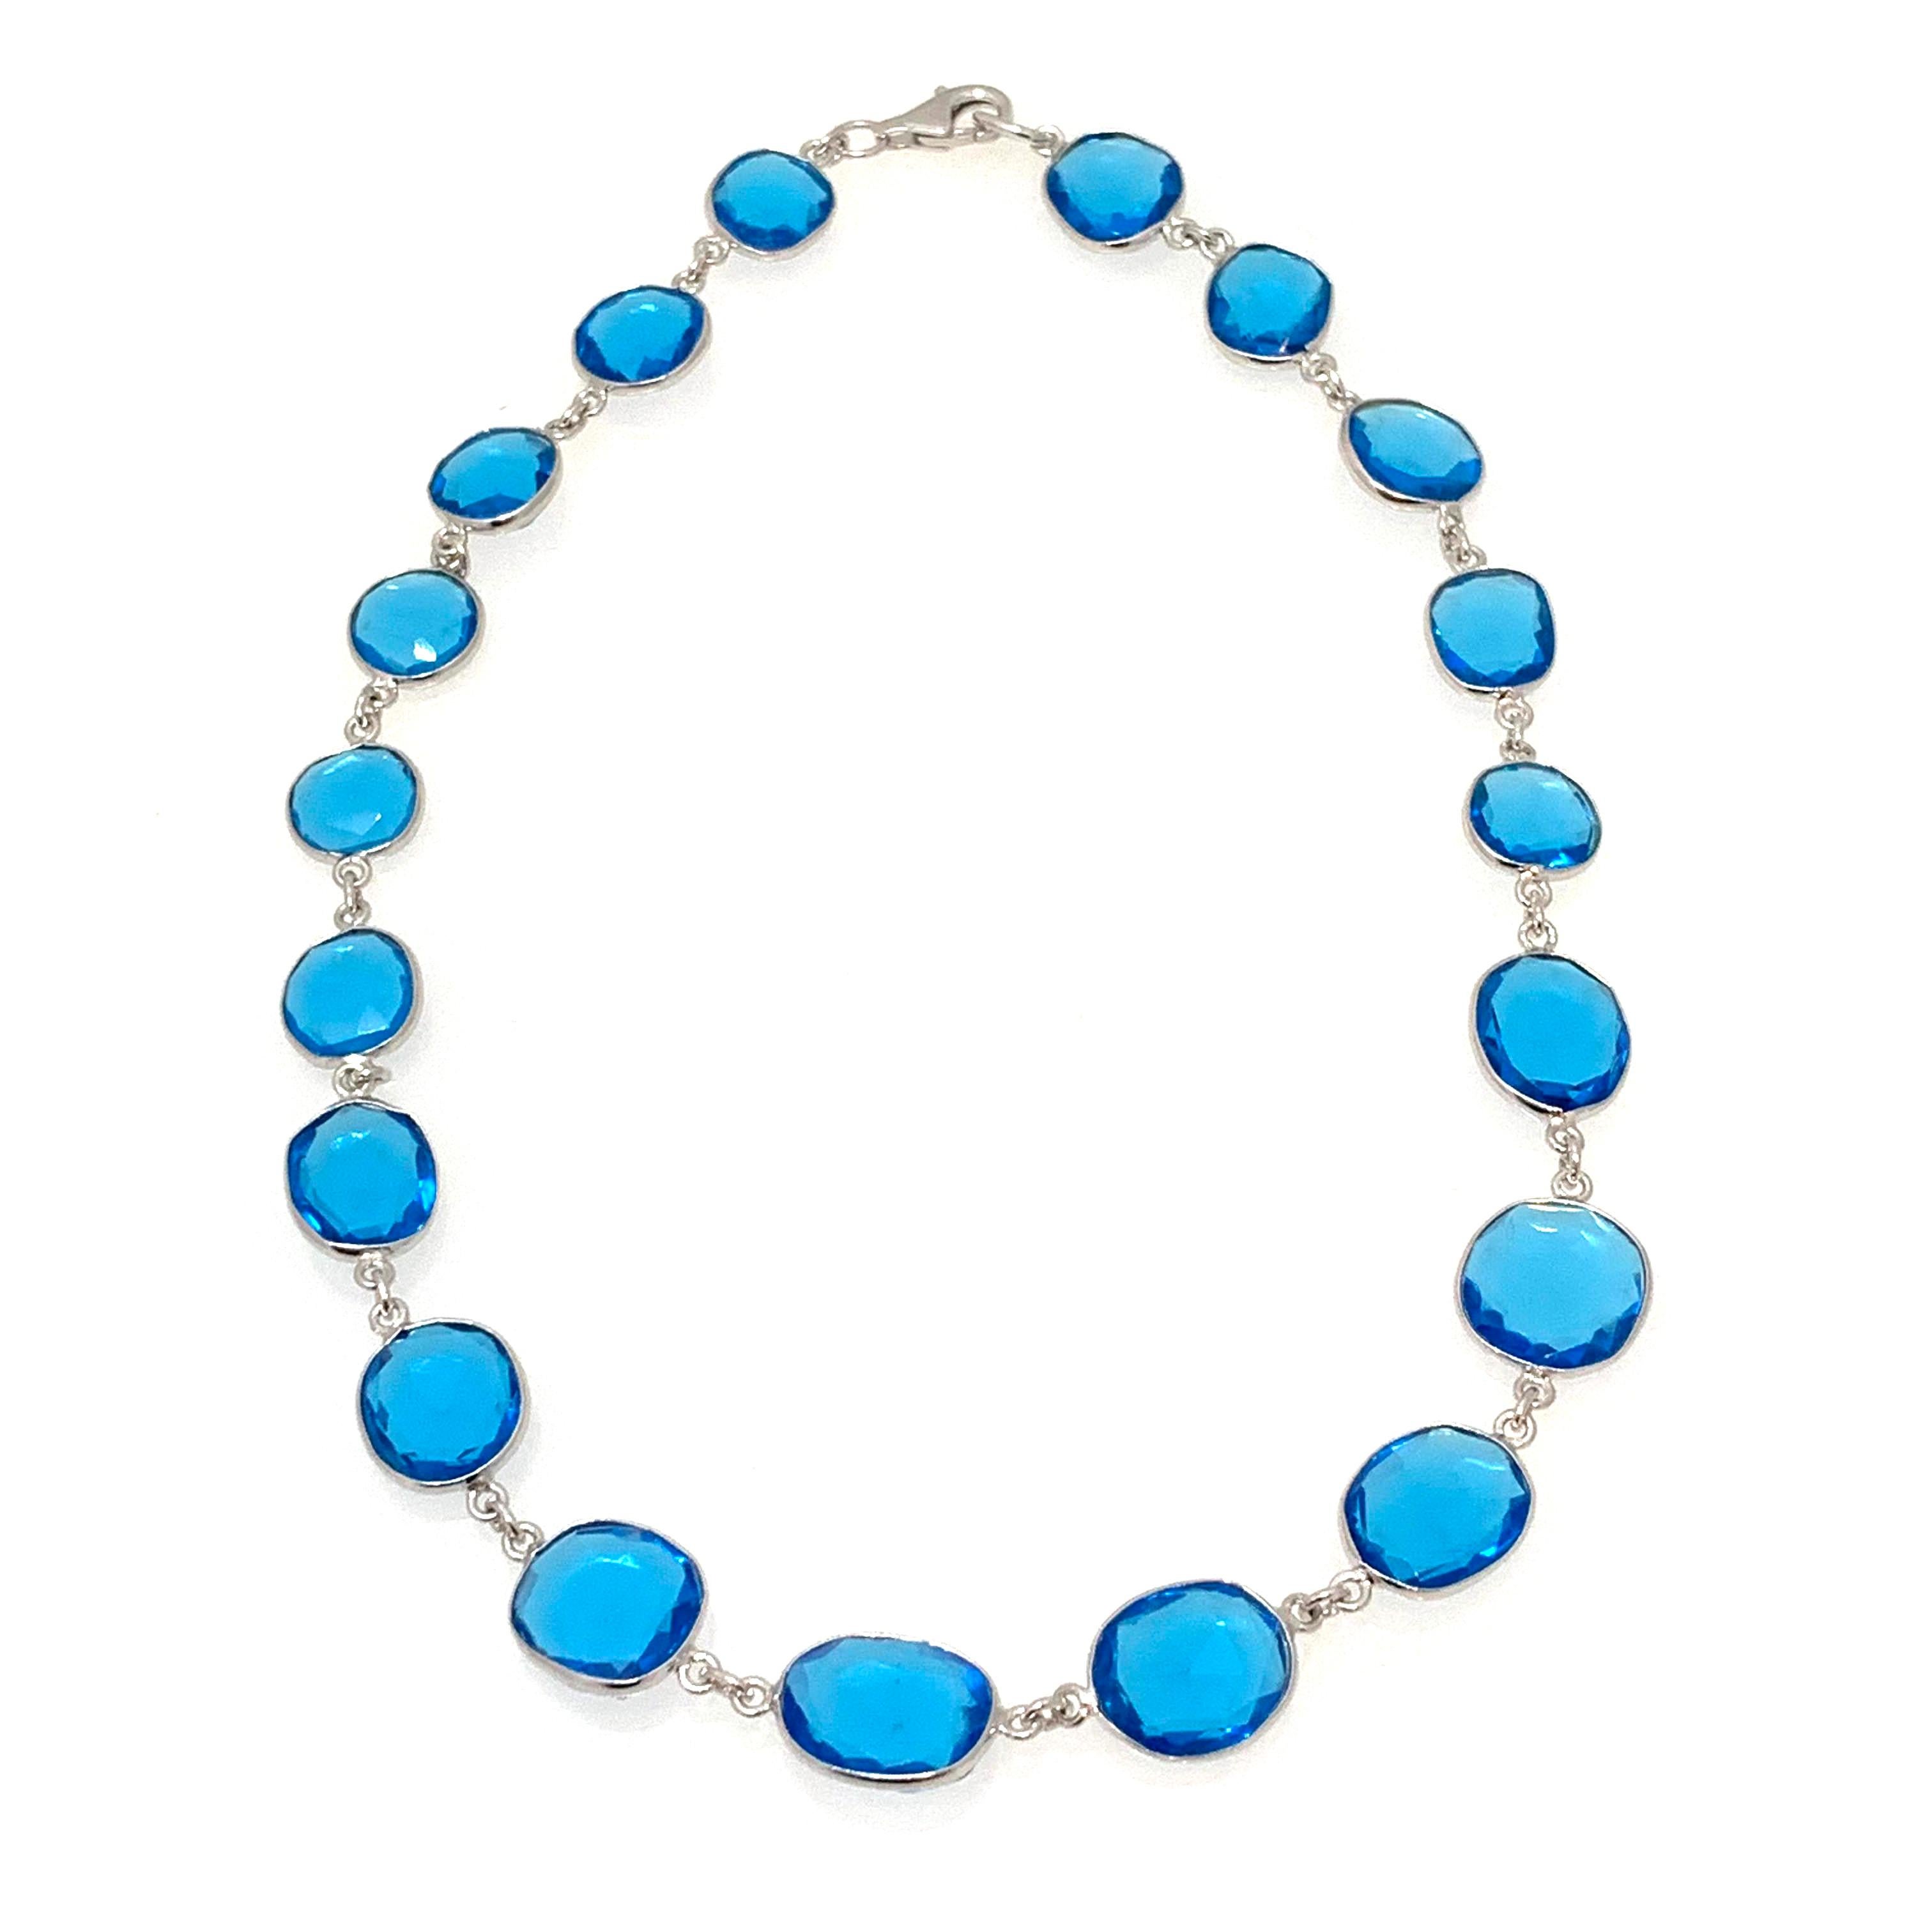 Découvrez ce superbe collier en argent sterling en quartz bleu suisse !

Cet élégant collier comprend 19 pièces d'hydroquartz bleu suisse de forme unique, taillées en rose. Chaque pièce mesure 12-13 mm (1/2